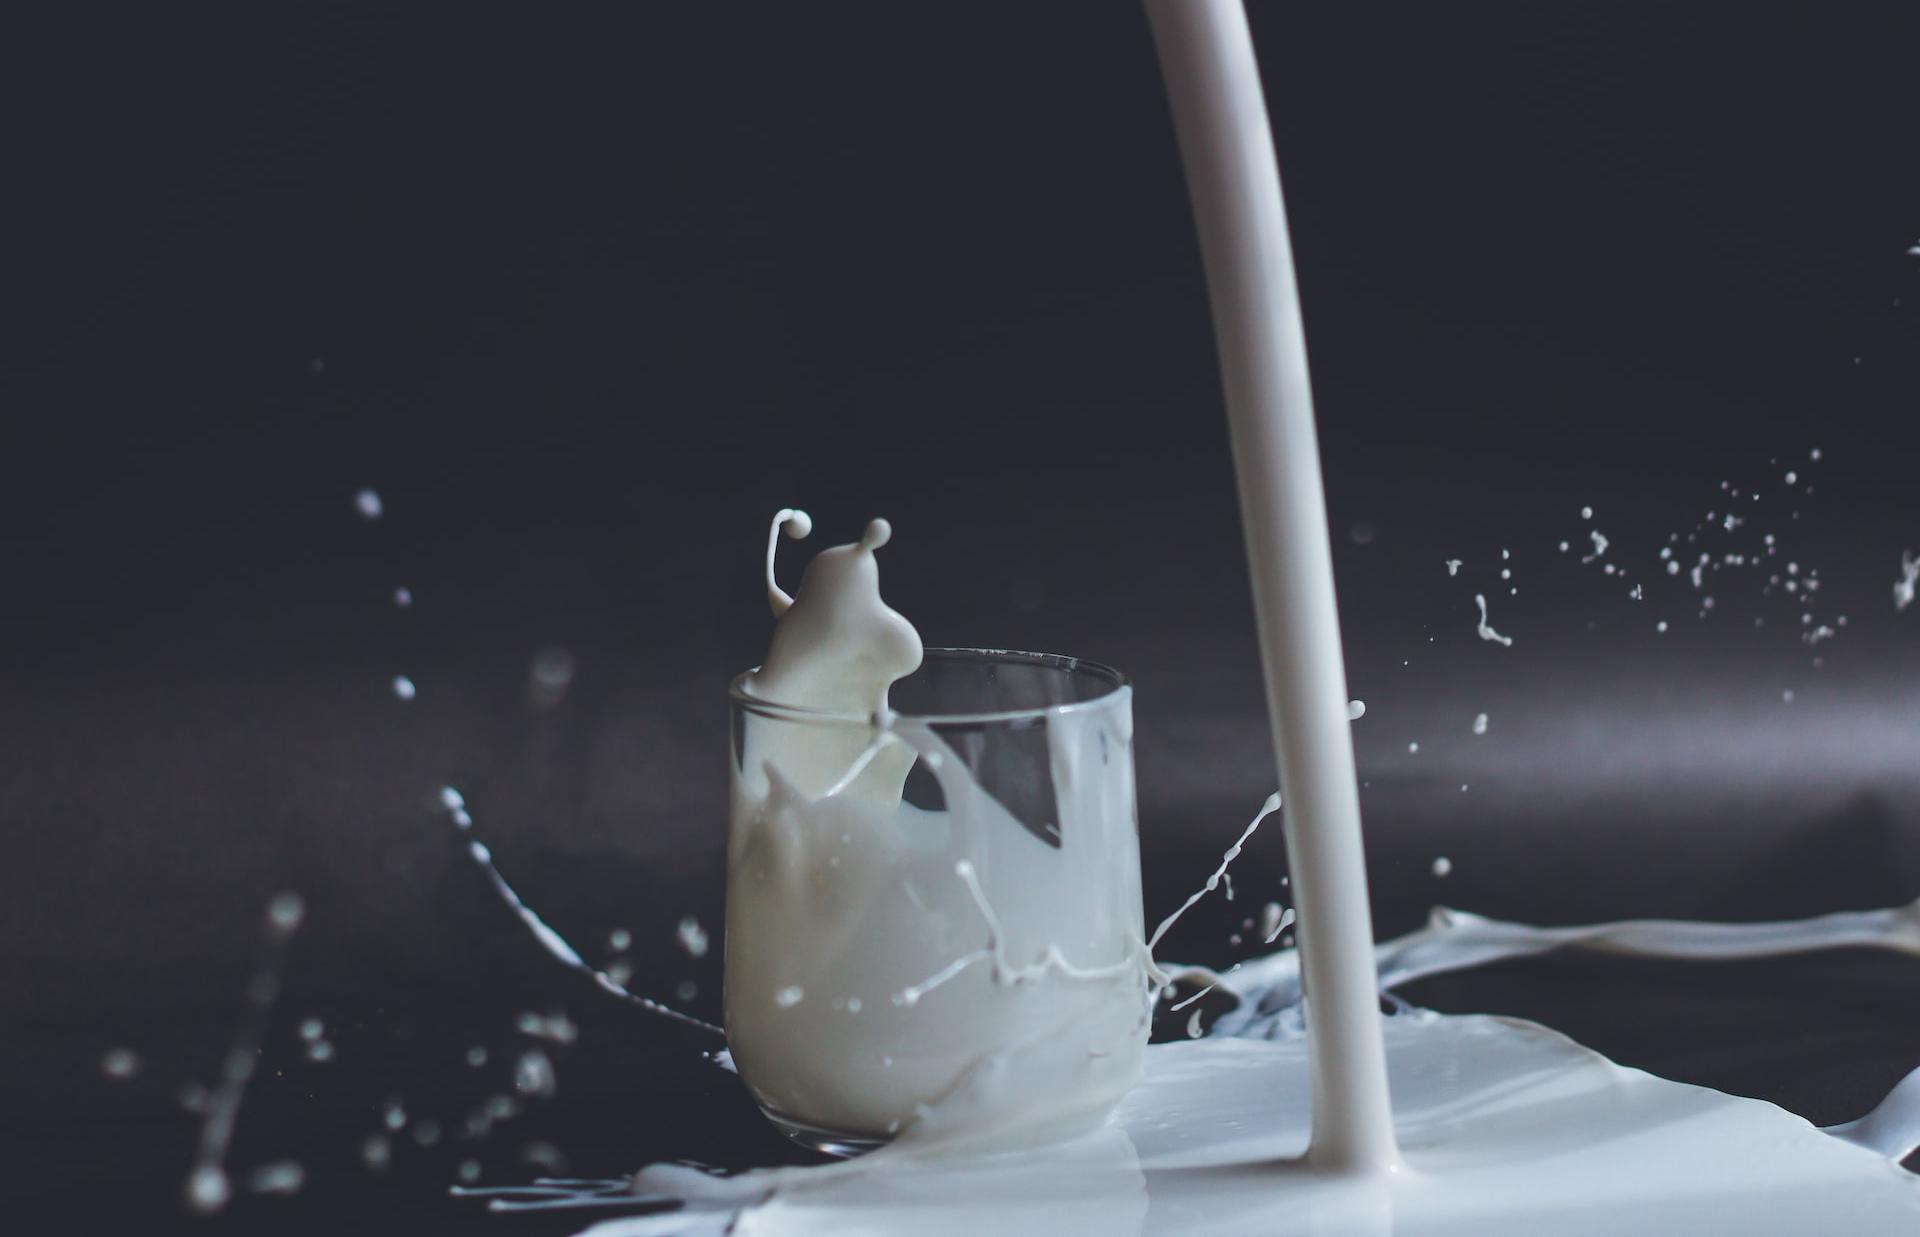 Роспотребнадзор рассказал о количестве фальсификата в молочной продукции - новости Афанасий